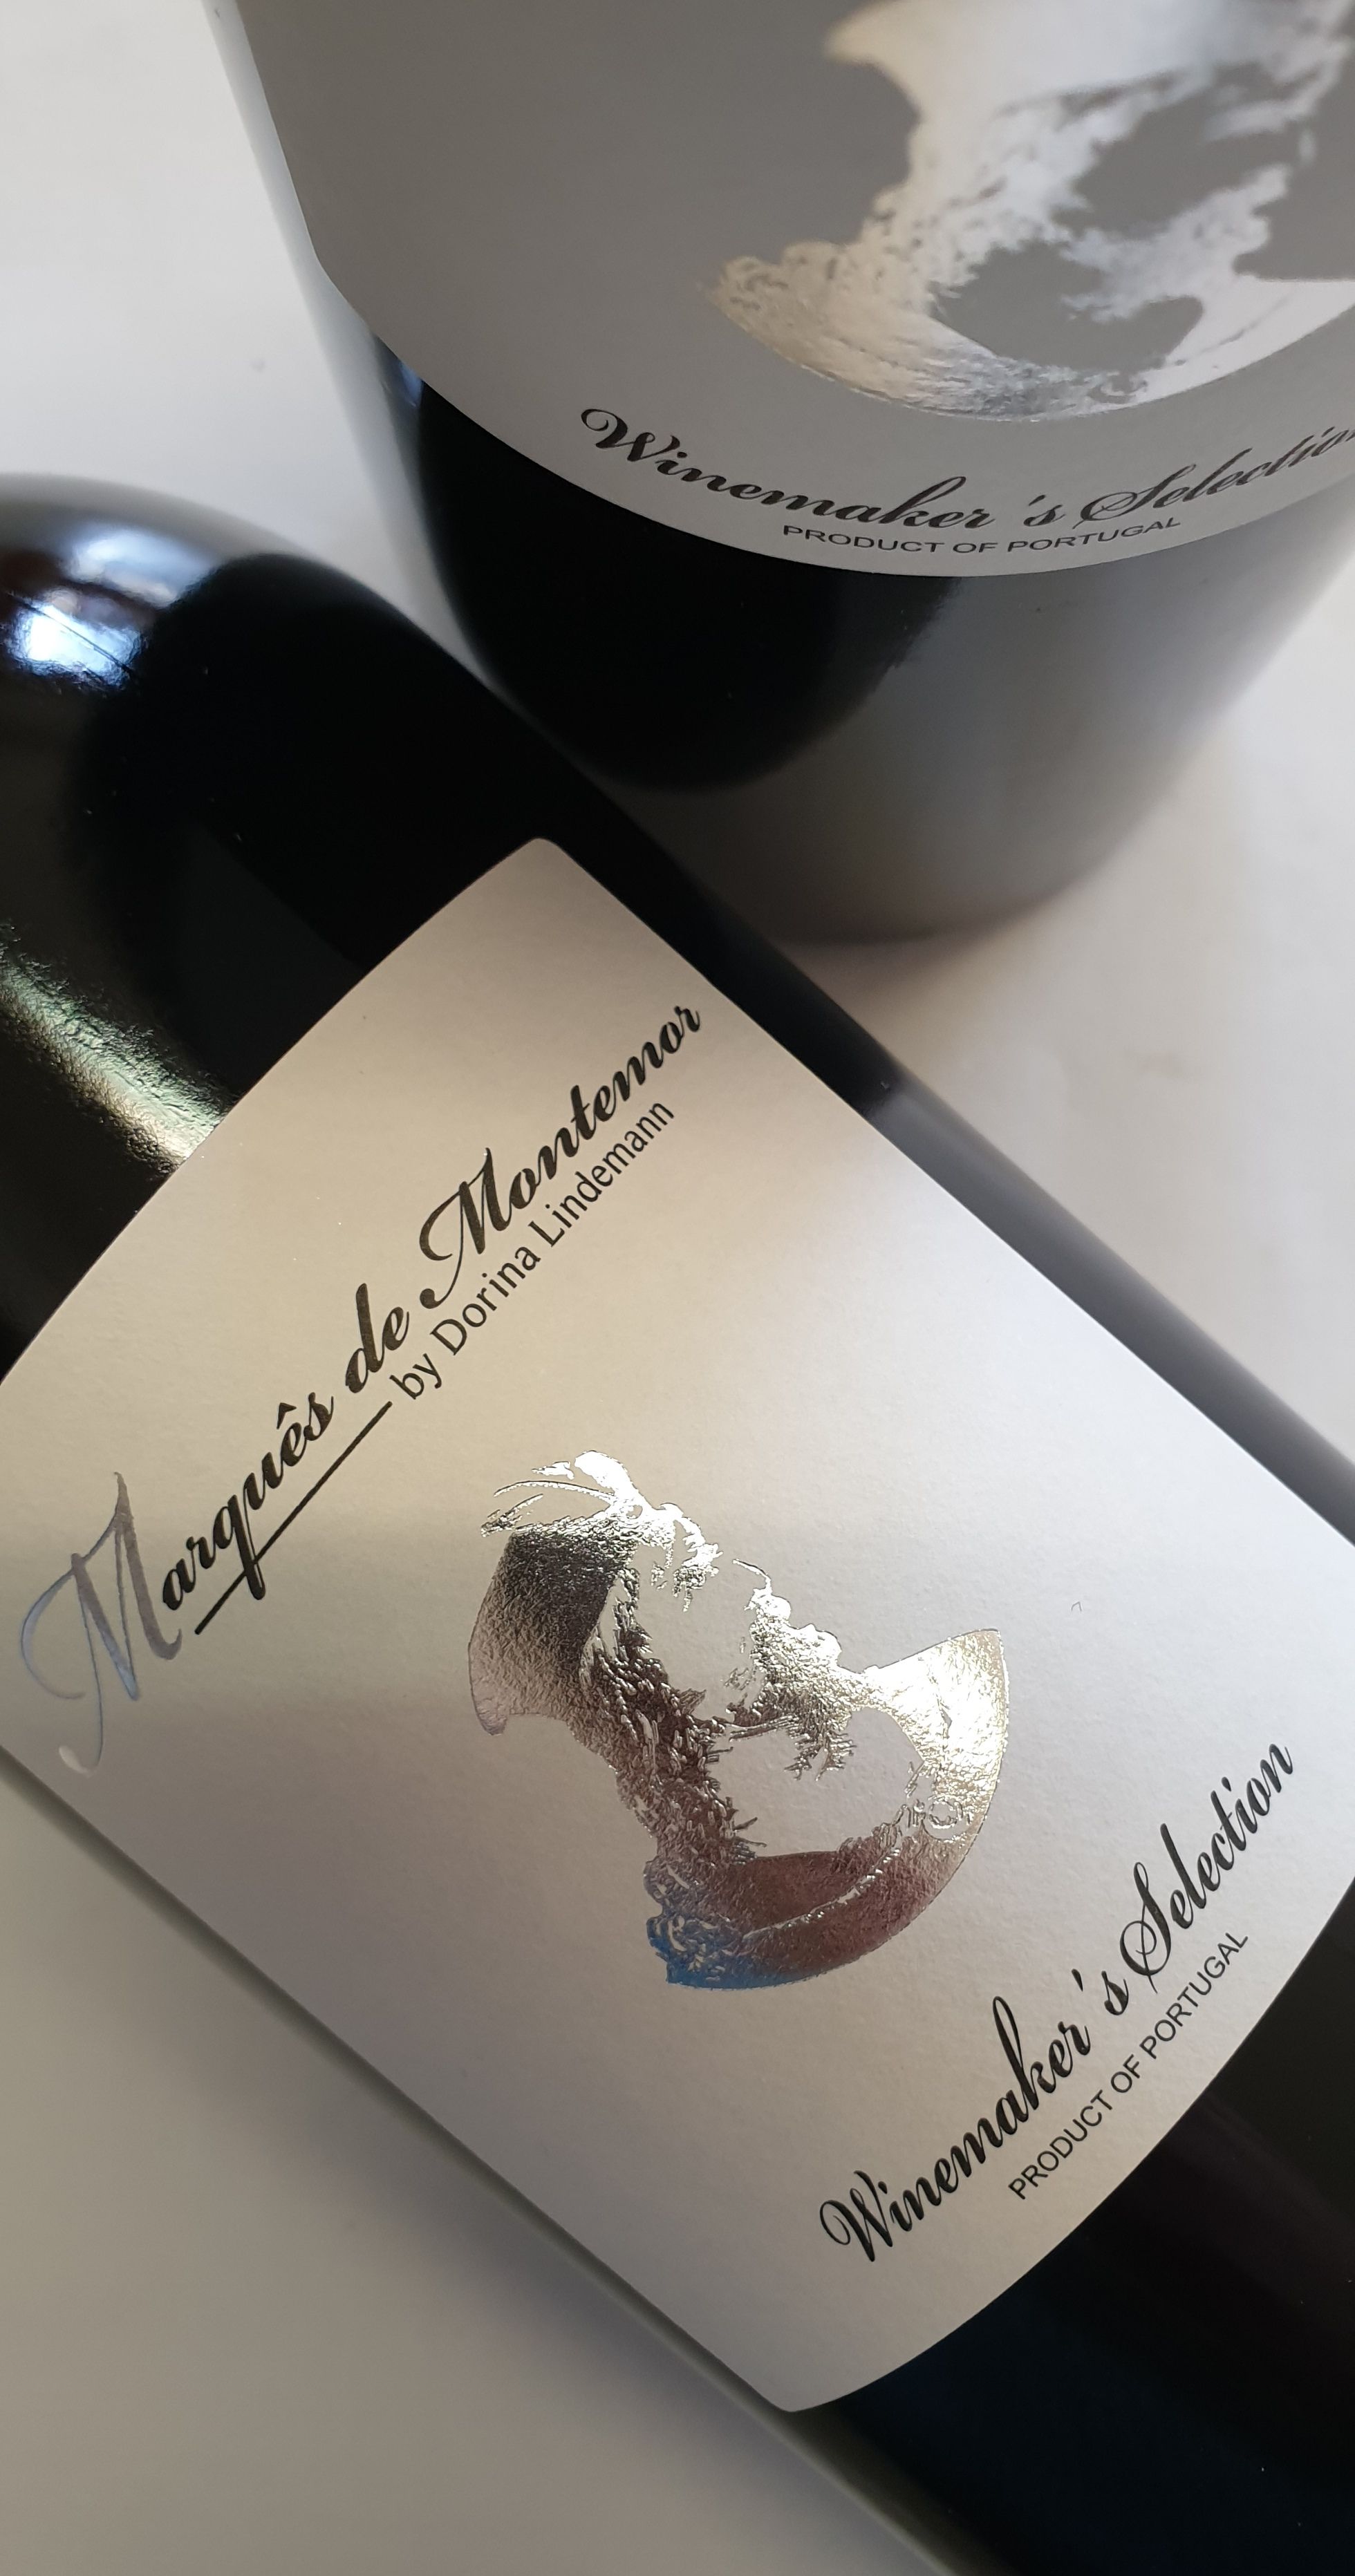 Winemaker's Selection Marques de Montemor 2019